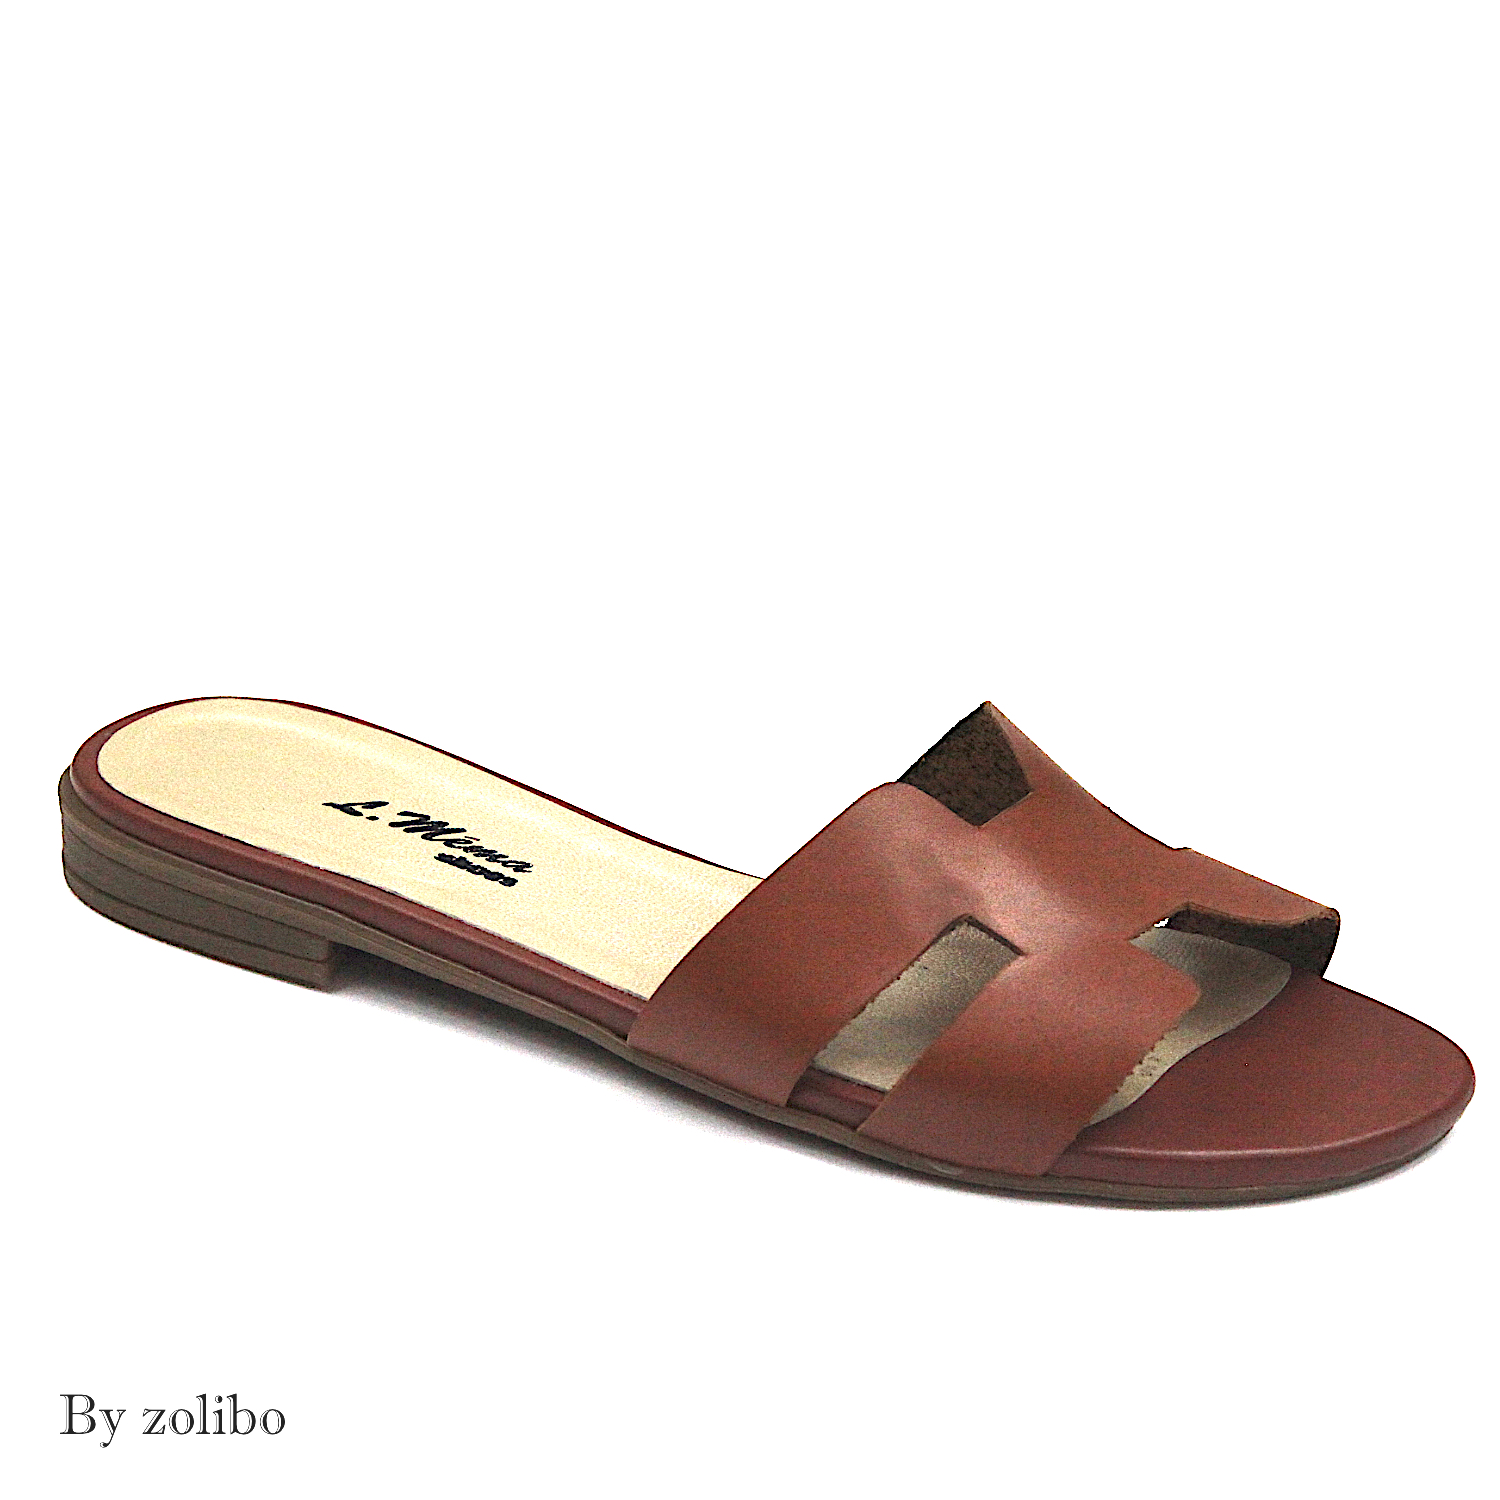 officiel Jai un cours danglais Installer sandales femme marron plates ...